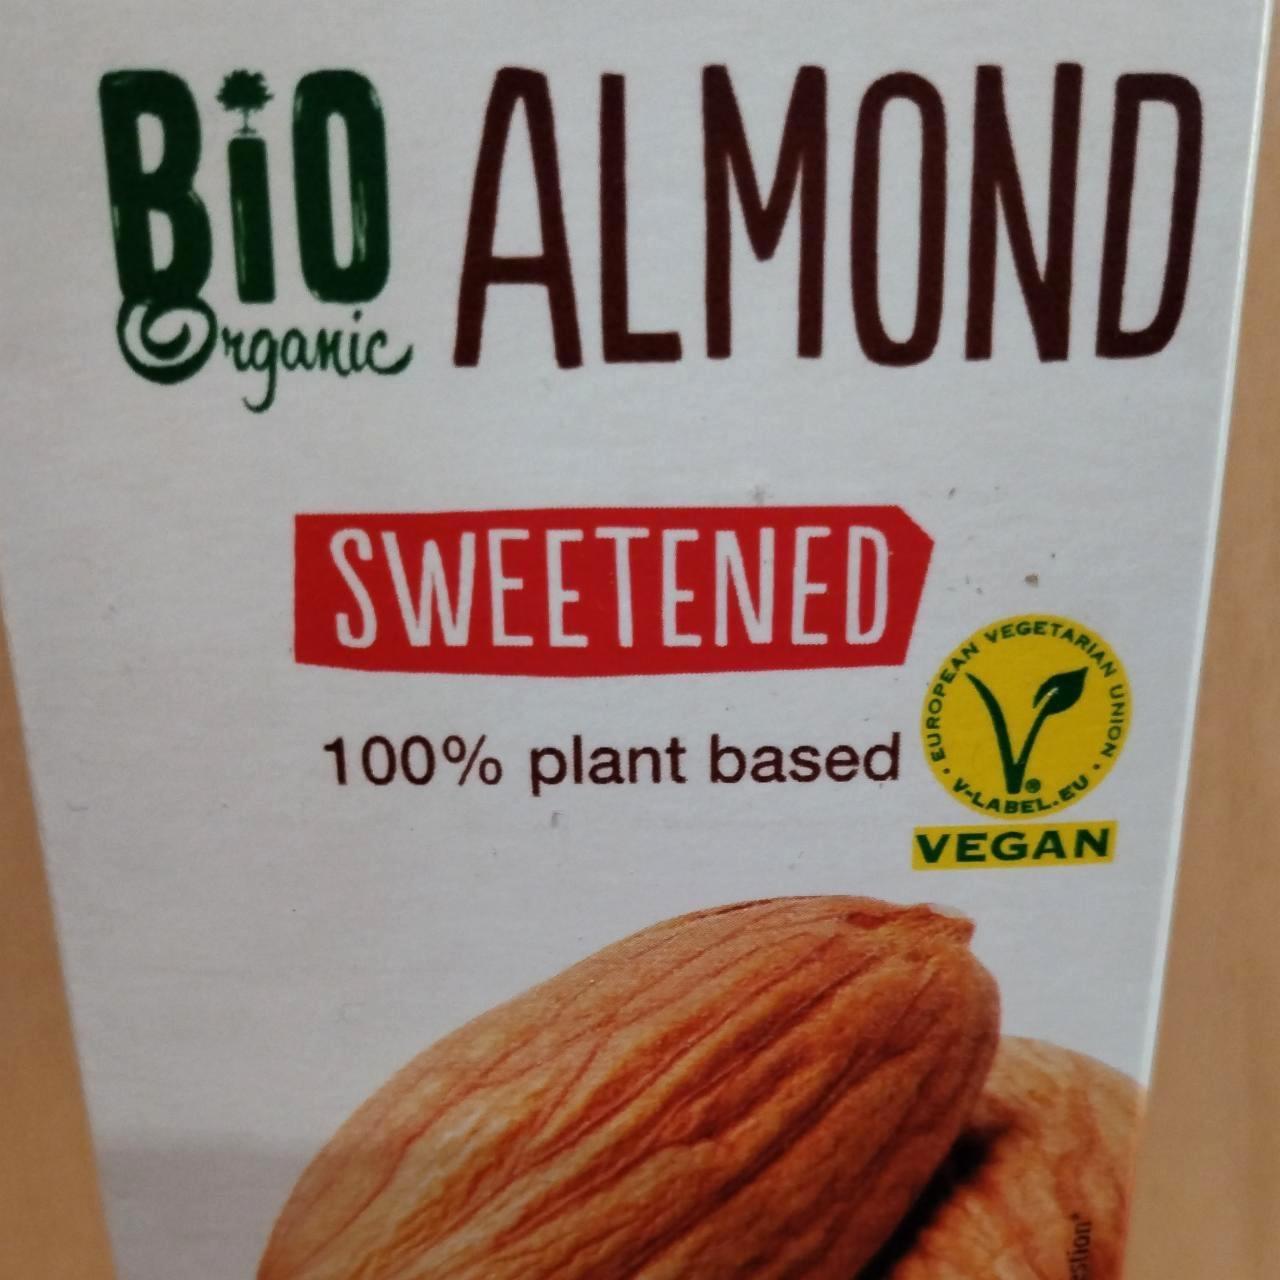 Képek - Bio almond sweetened Vemondo